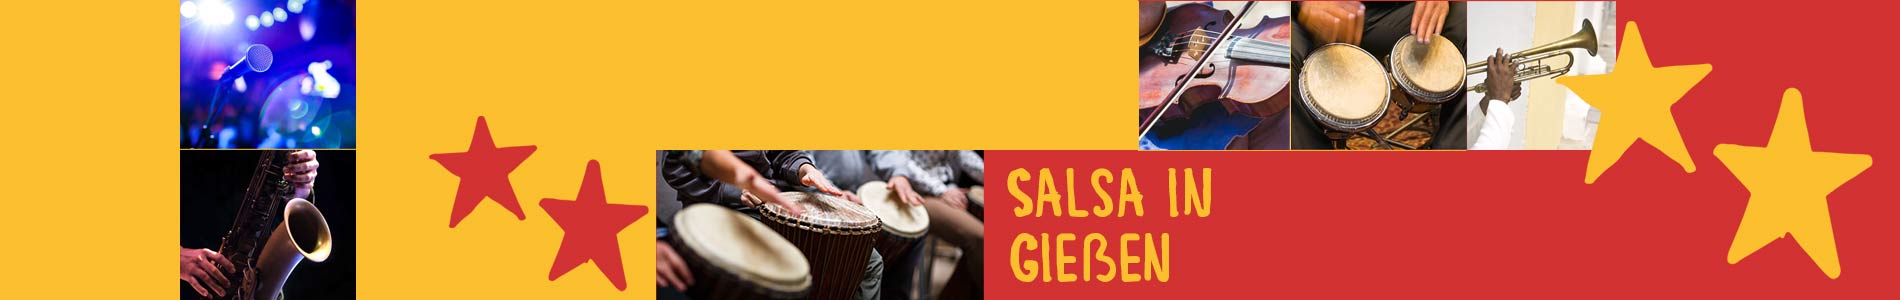 Salsa in Gießen – Salsa lernen und tanzen, Tanzkurse, Partys, Veranstaltungen